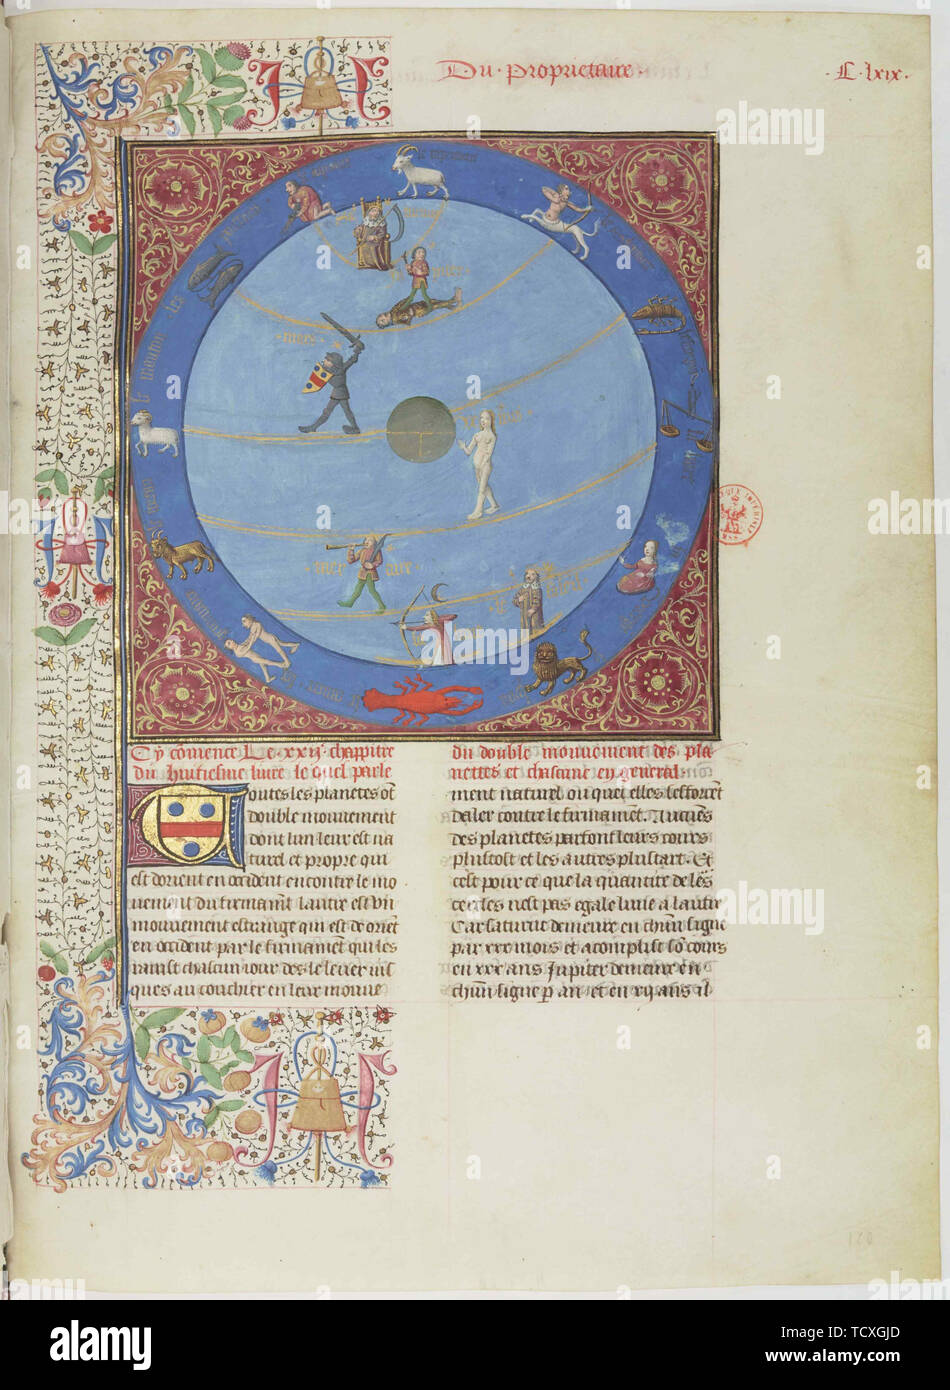 Celestial spheres, planets and zodiacs. Miniature from the Livre des proprietés des choses, c. 1480. Creator: Anonymous. Stock Photo